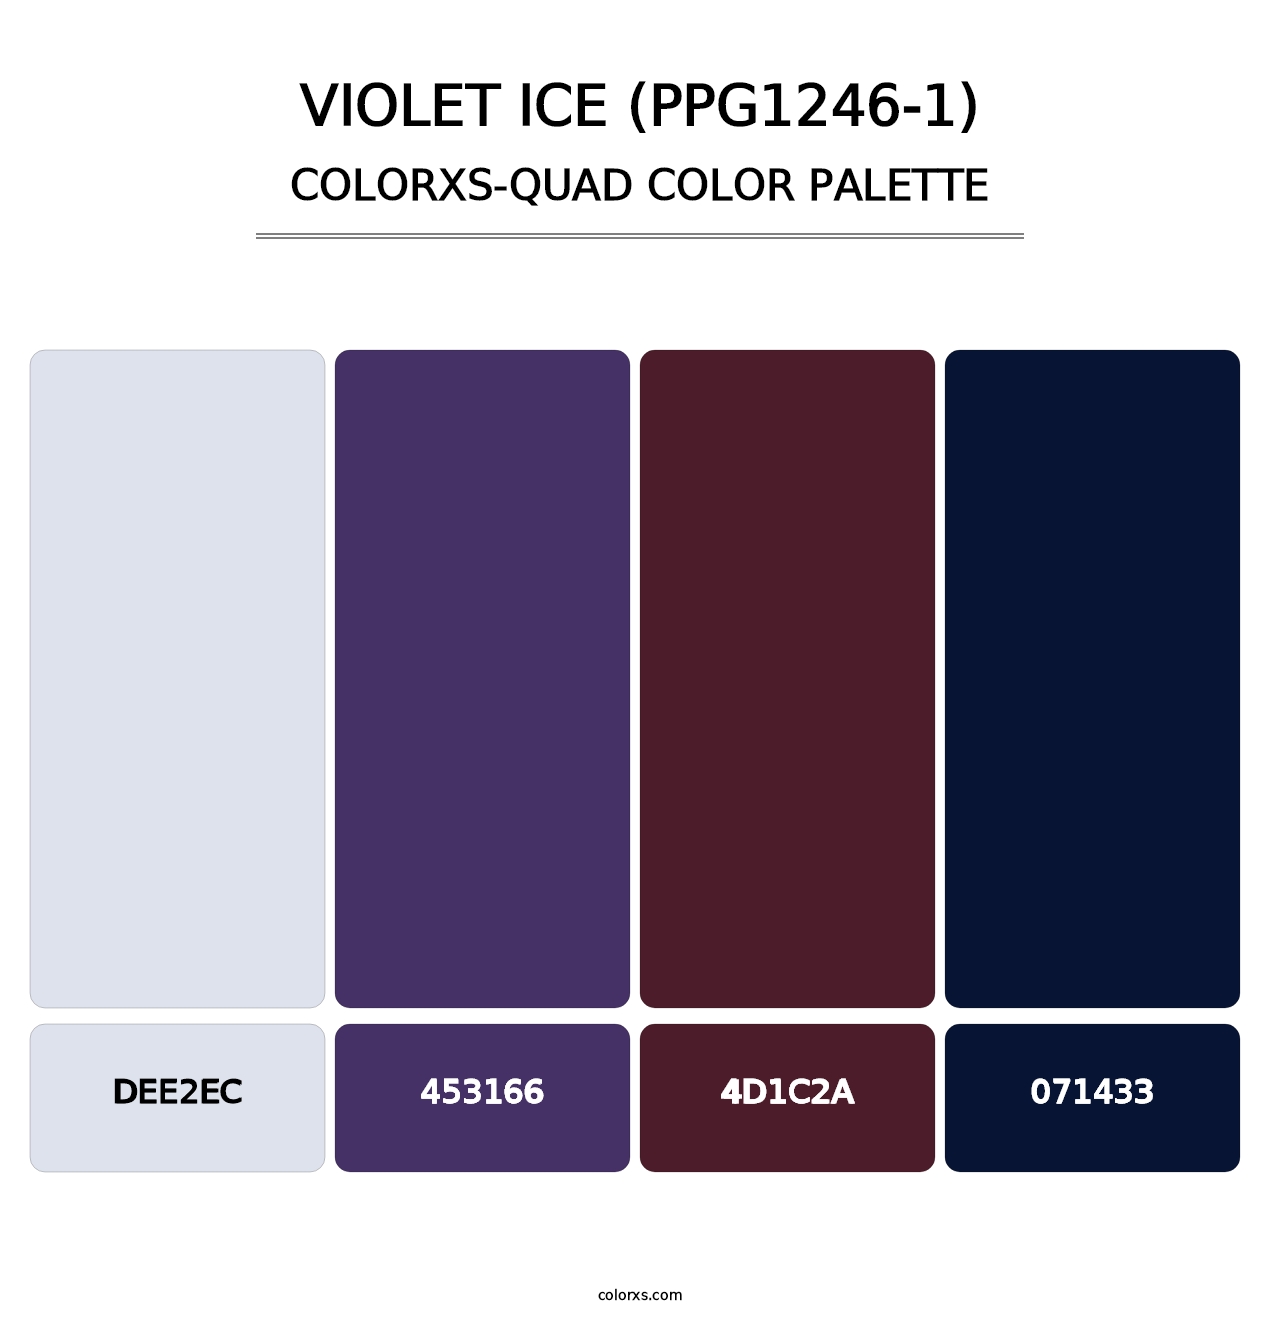 Violet Ice (PPG1246-1) - Colorxs Quad Palette